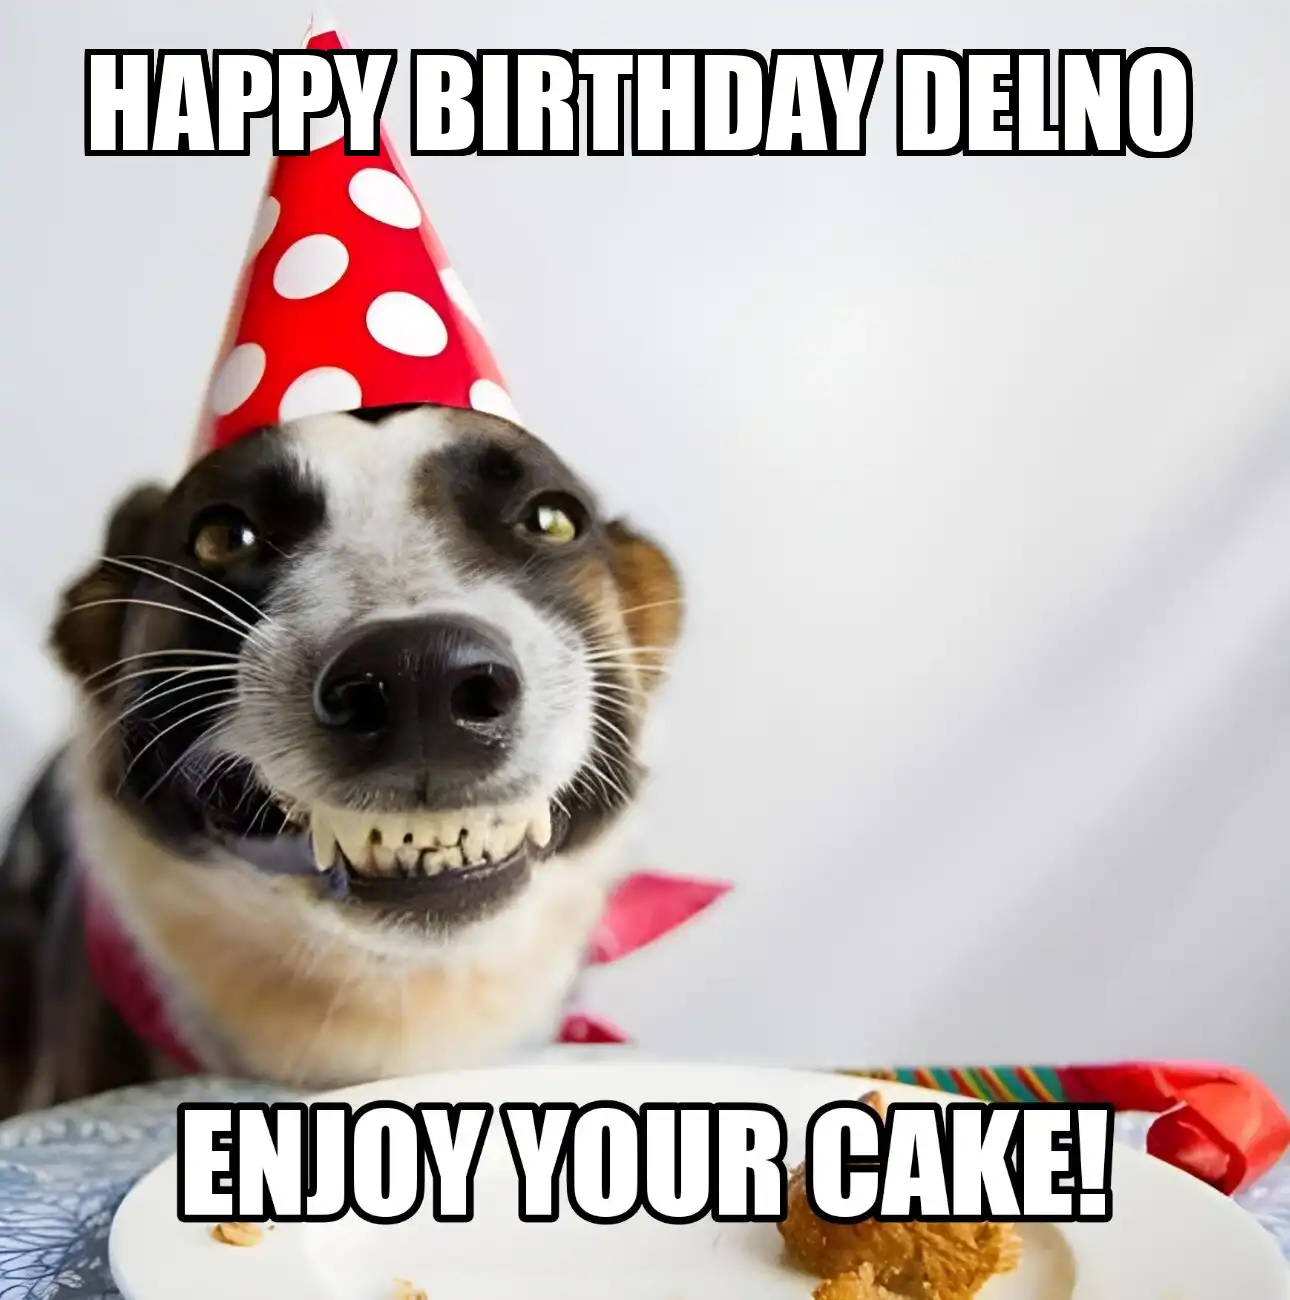 Happy Birthday Delno Enjoy Your Cake Dog Meme